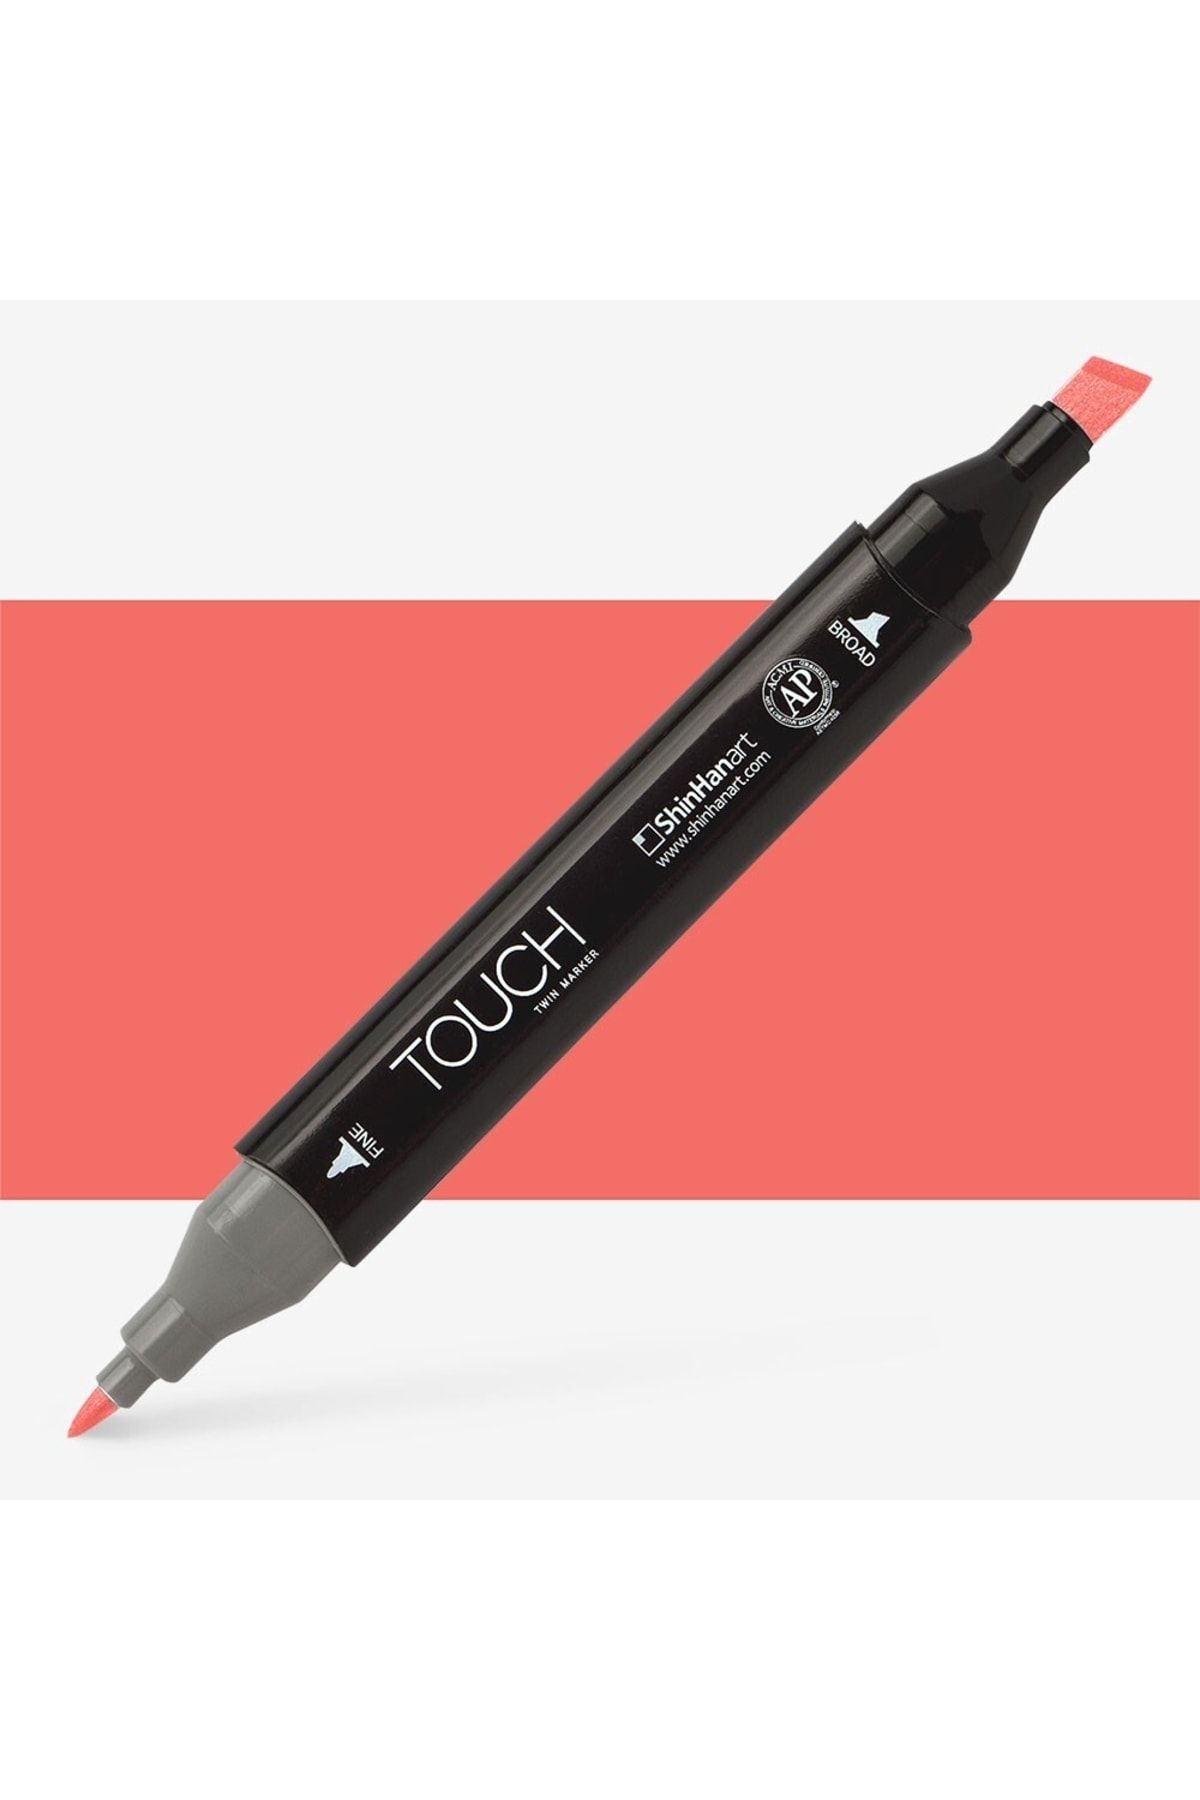 Shinhan Art Touch Twin Marker Pen : Çift Uçlu Marker Kalemi : Coral Pınk : R16